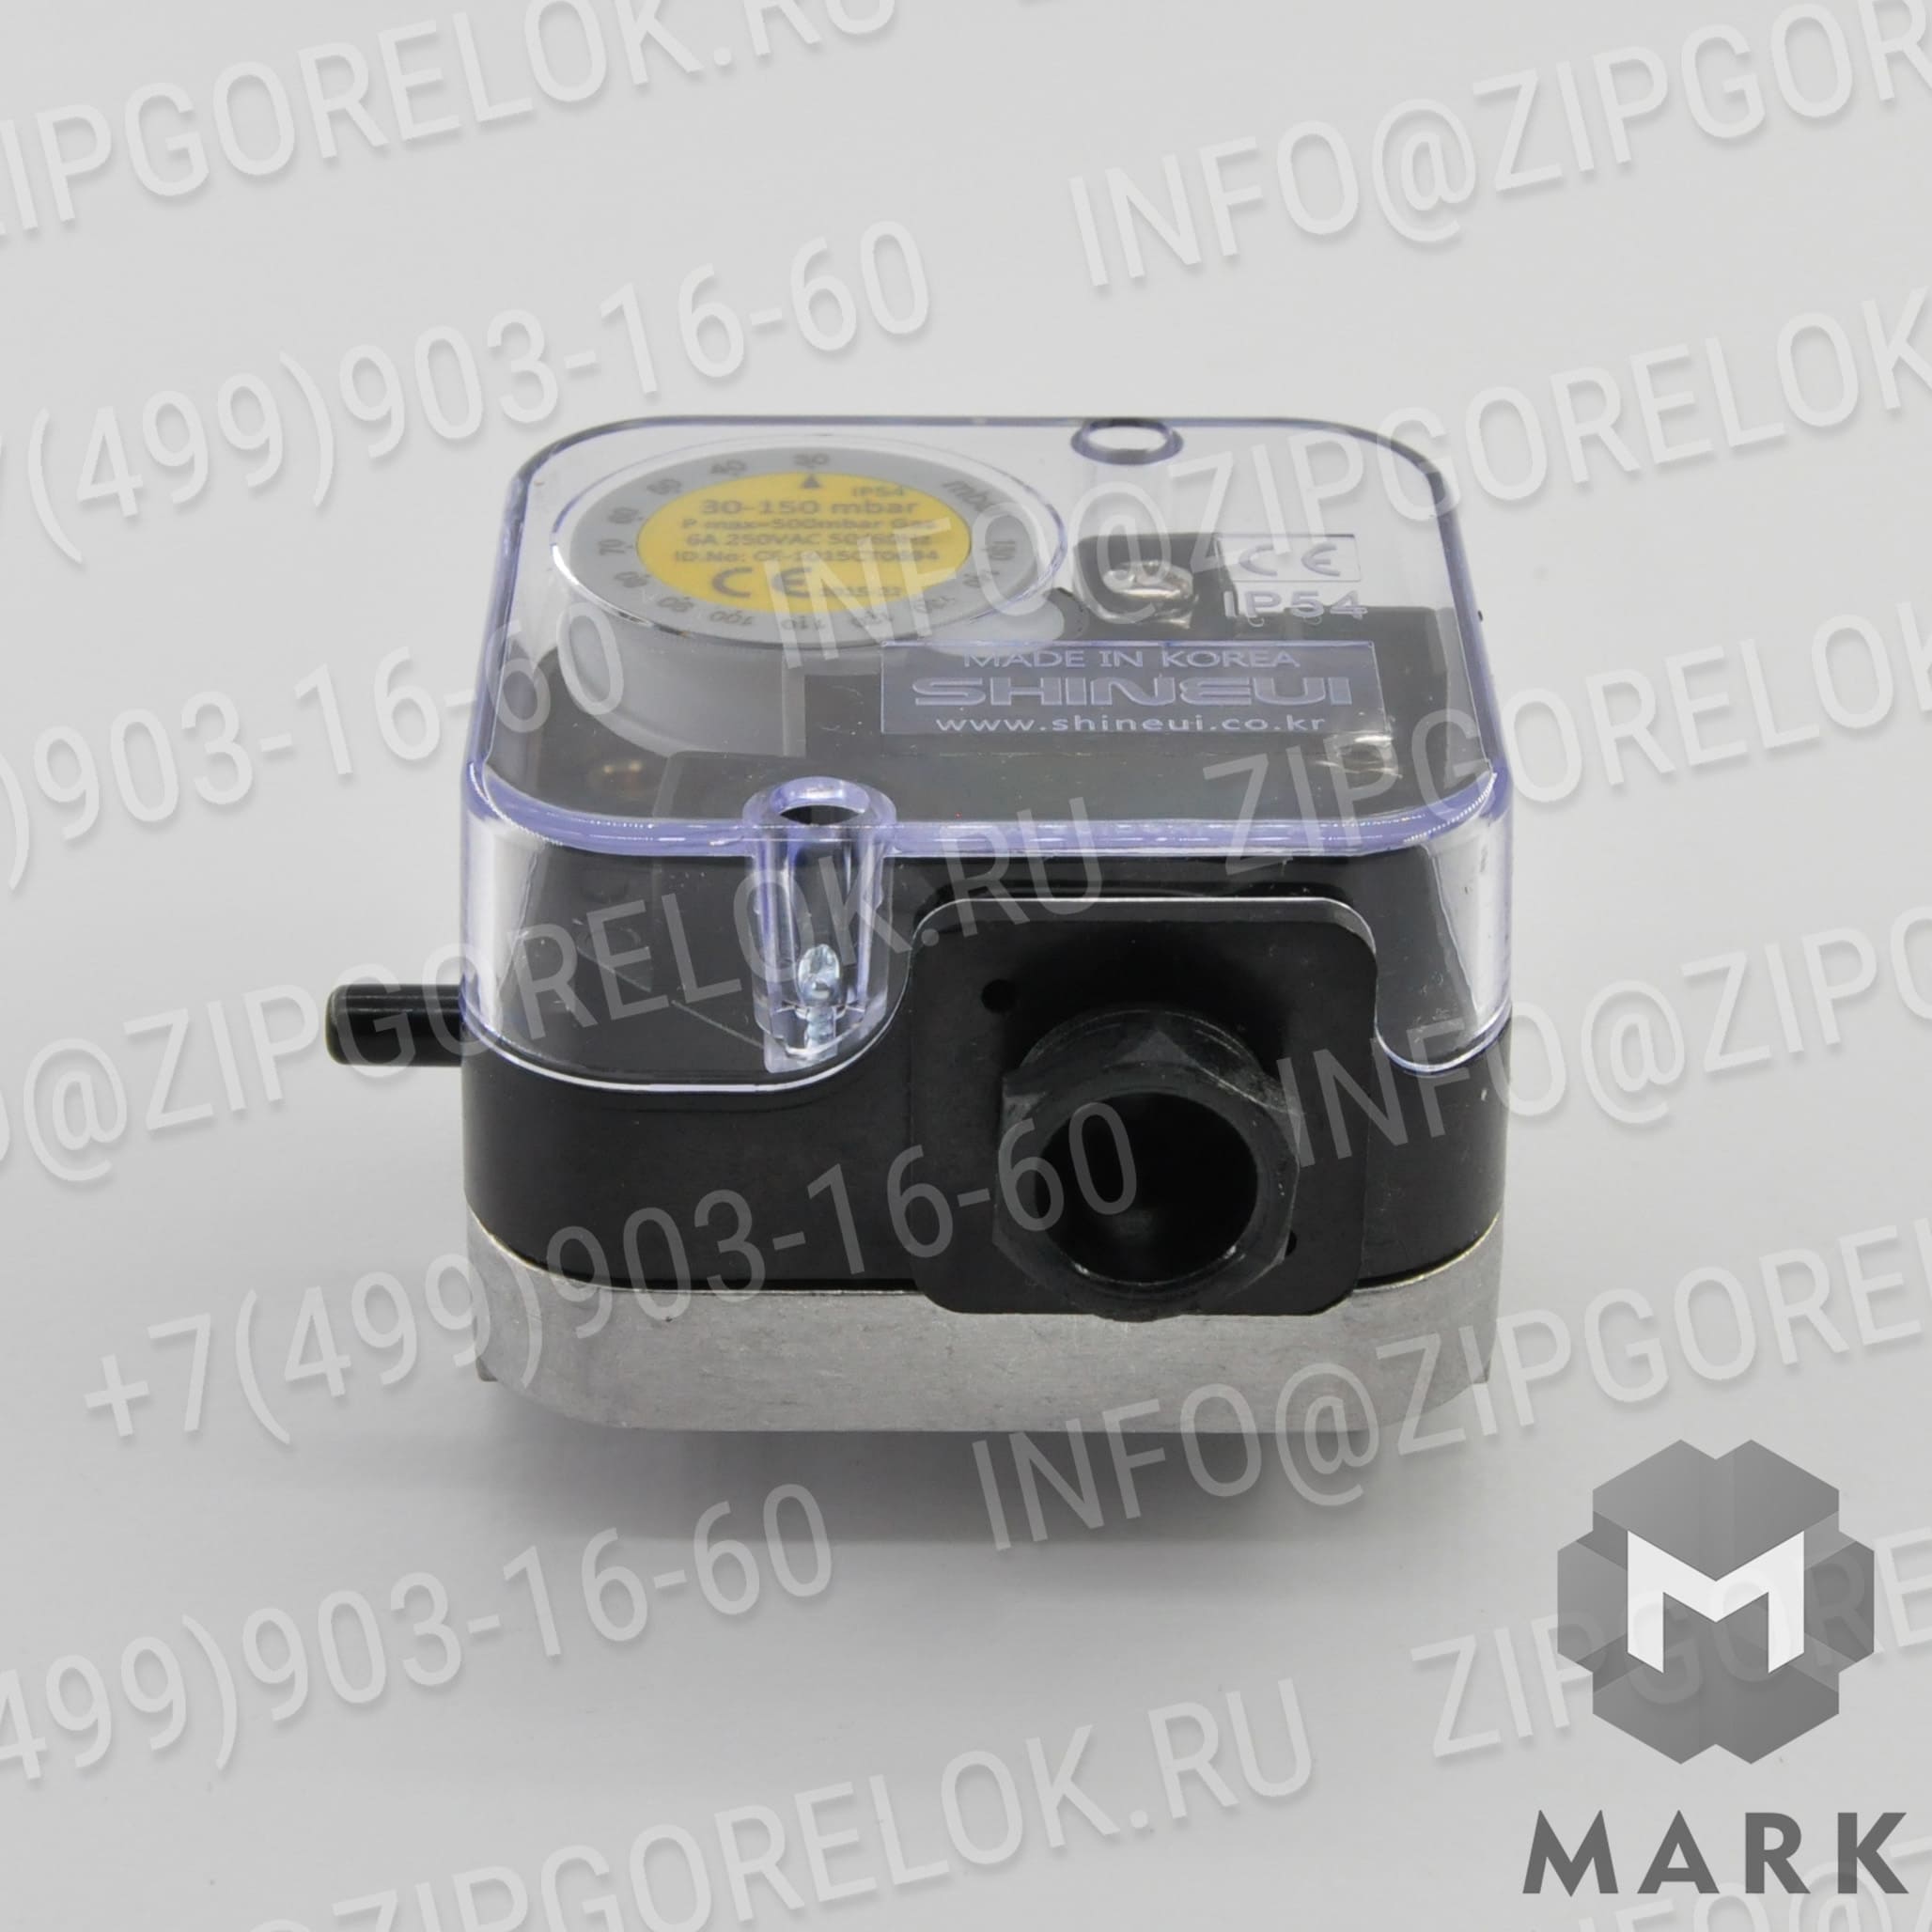 SGPS-150V Реле давления: Гильза для установки датчиков температуры G1/2" X 401,5 мм